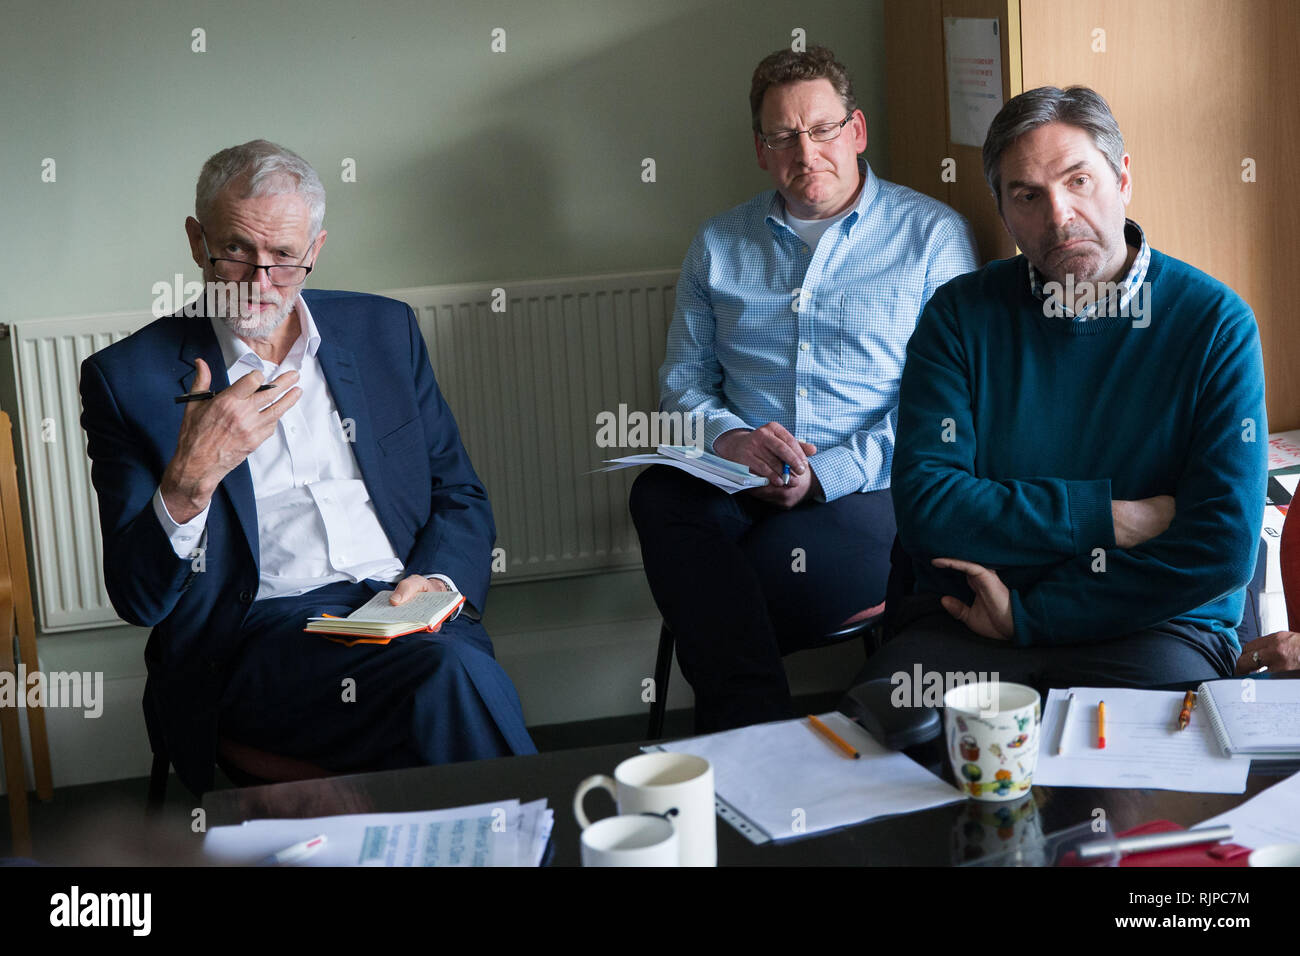 Leader du travail Jeremy Corbyn, lors d'une visite à un centre de conseils et de prestations de logement dans la région de Worcester à discuter de travail faiblement rémunéré, l'insécurité d'emploi et de la pauvreté au travail. Banque D'Images